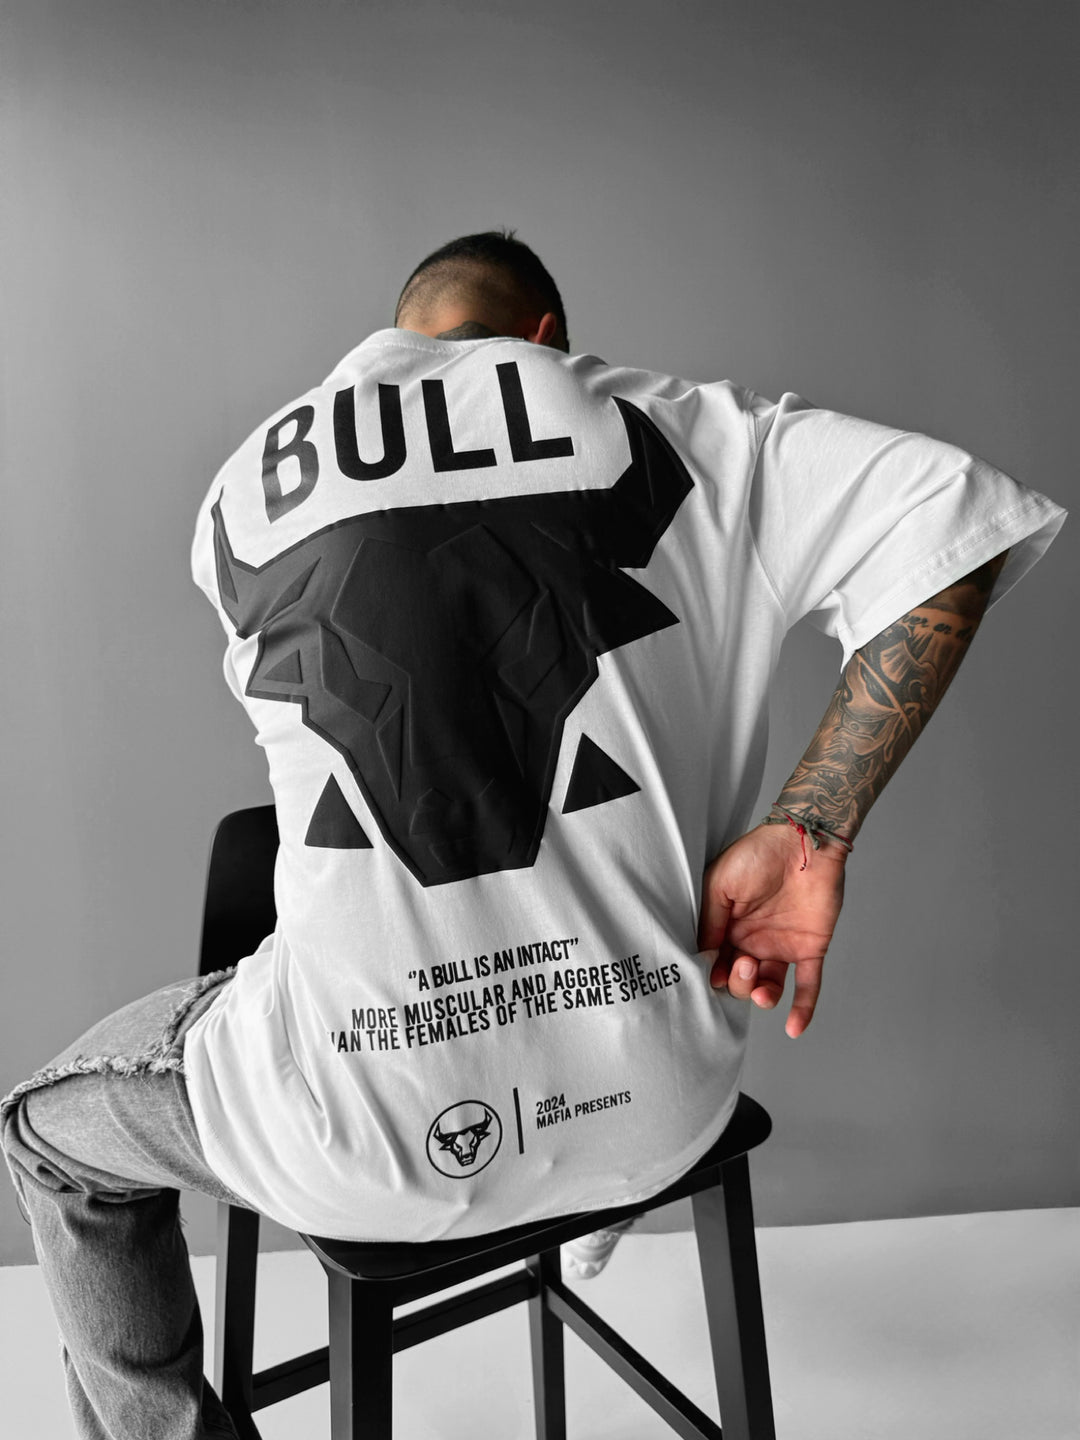 Oversize Bull T-shirt - White and Black